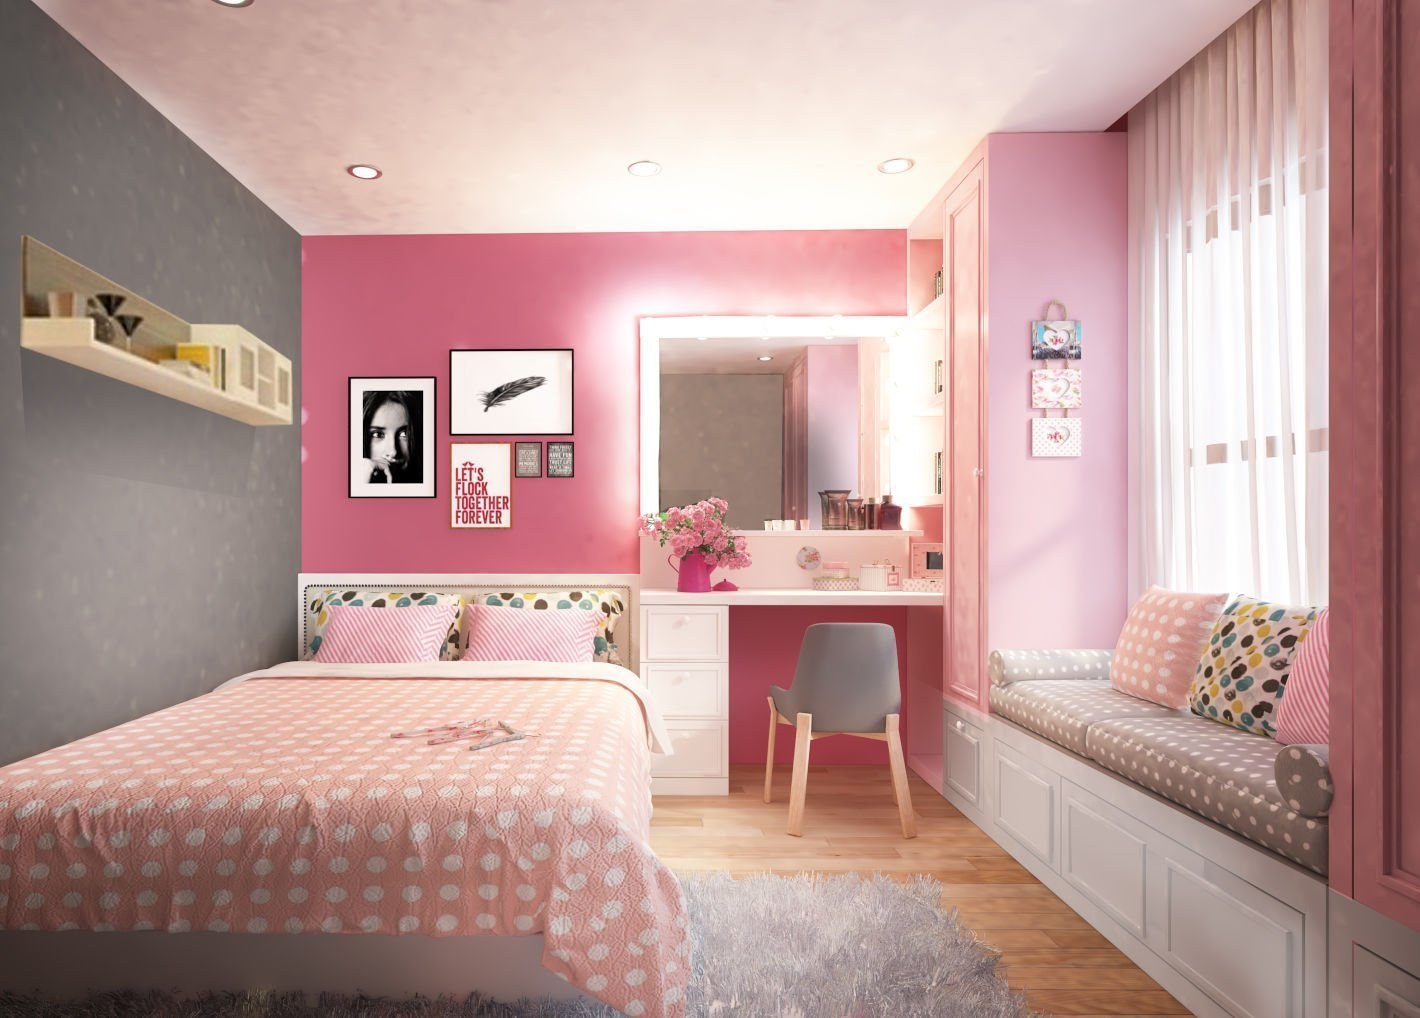 Trang trí phòng ngủ nhỏ cho nữ với những ý tưởng đơn giản